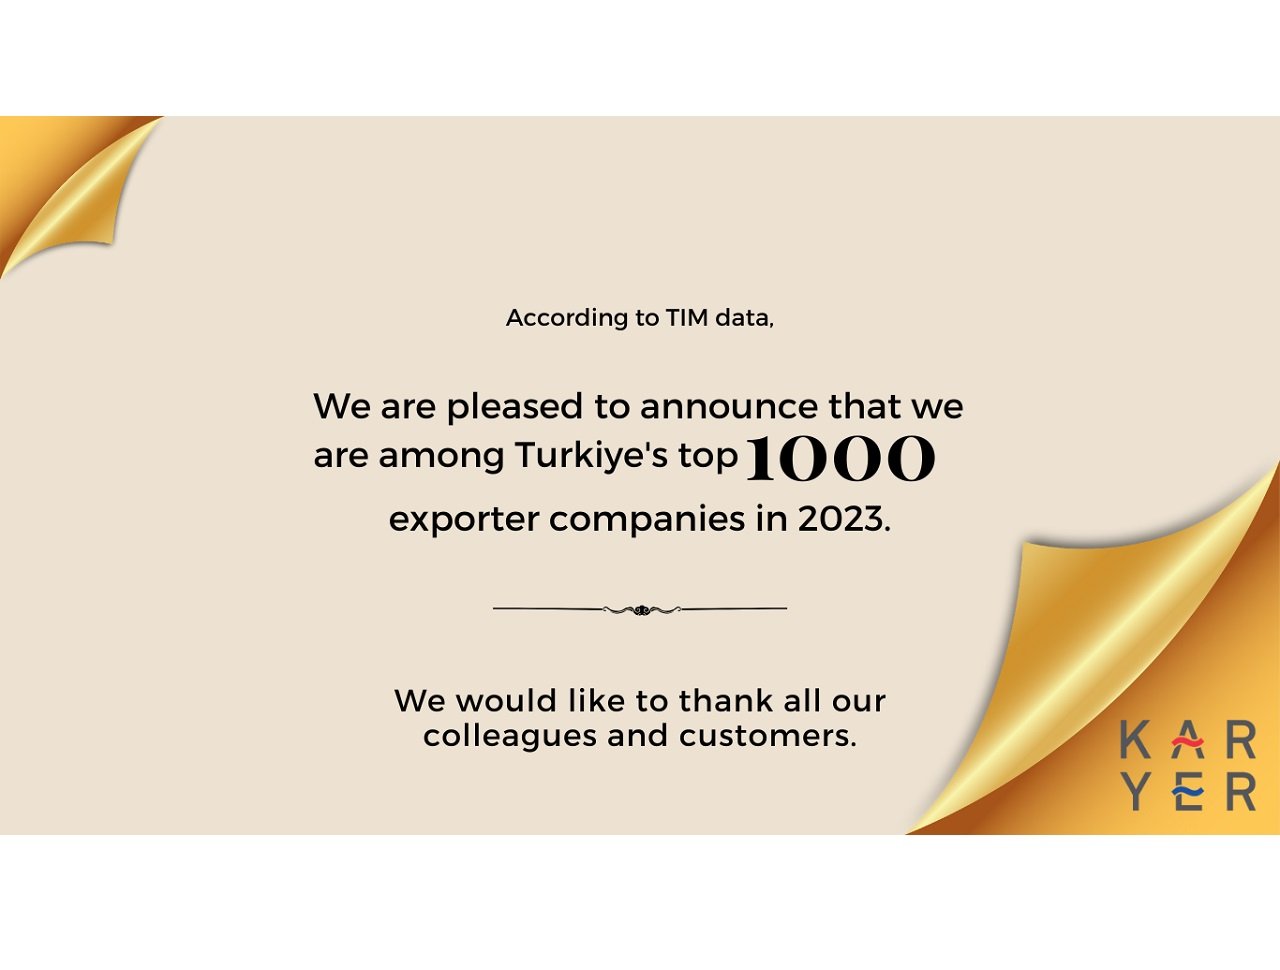 Компания KARYER добилась значительного успеха в экспортном рейтинге Турции в 2023 году